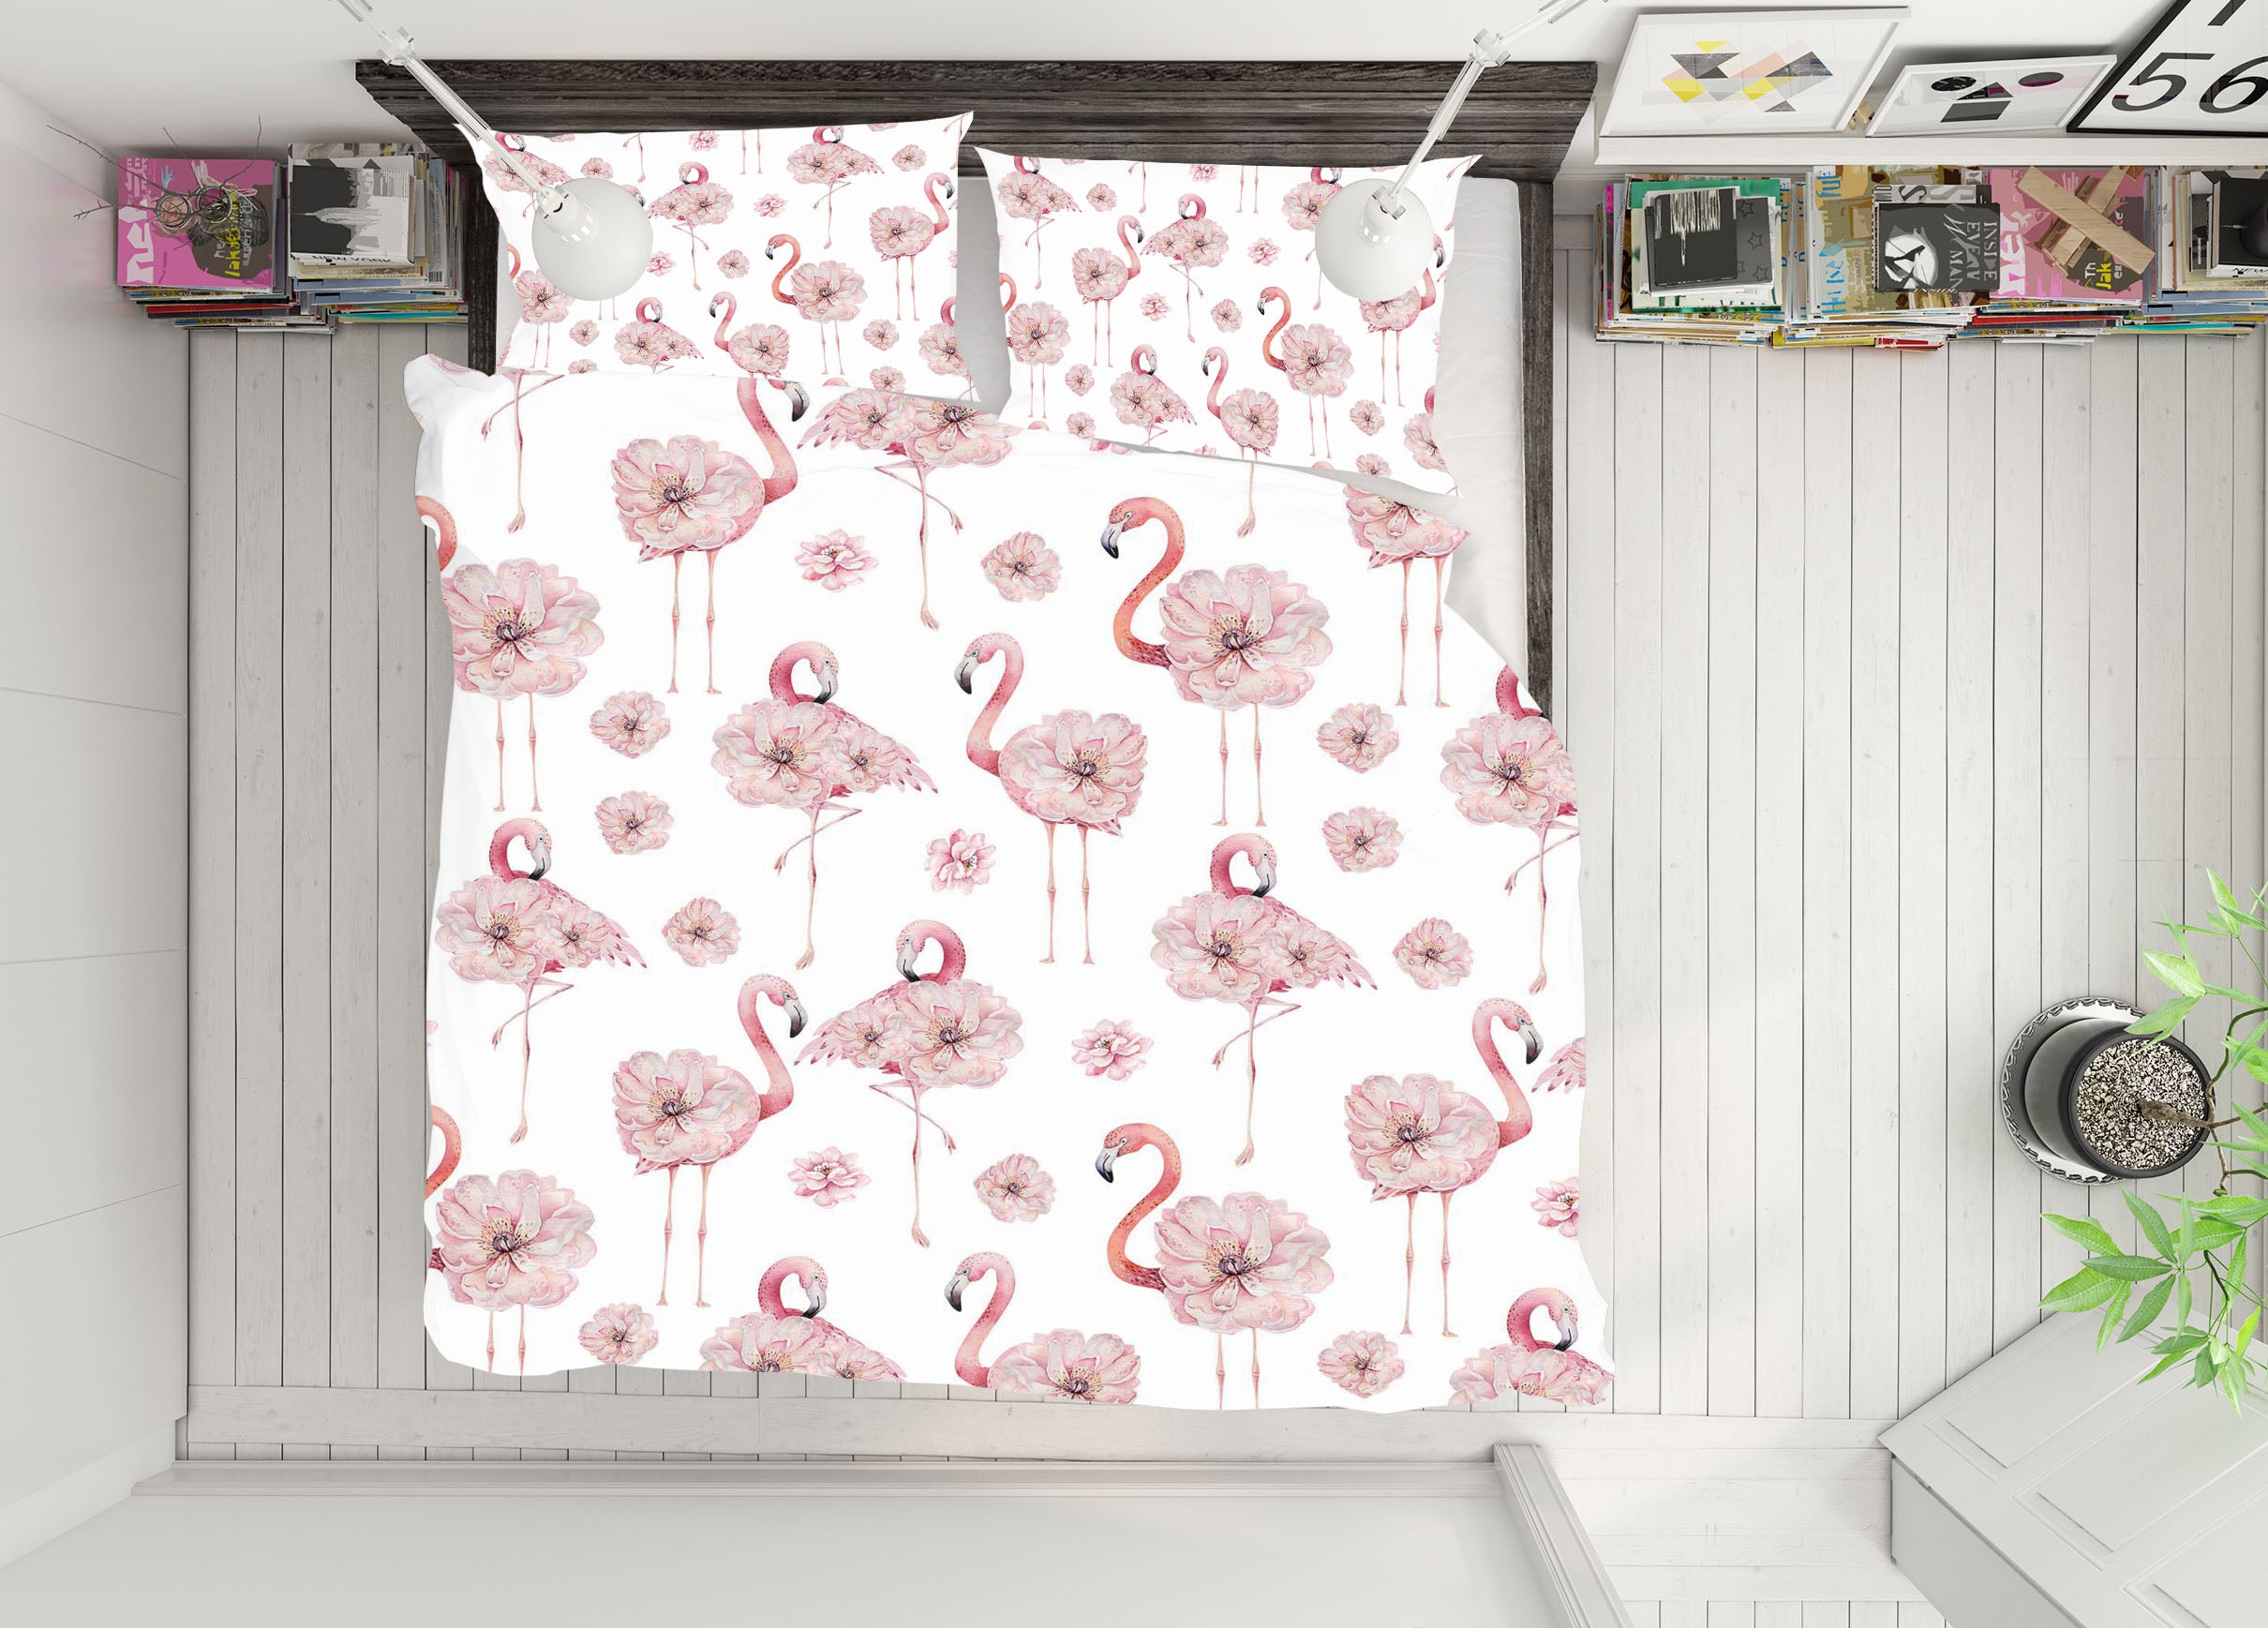 3D Flamingo Flower 242 Uta Naumann Bedding Bed Pillowcases Quilt